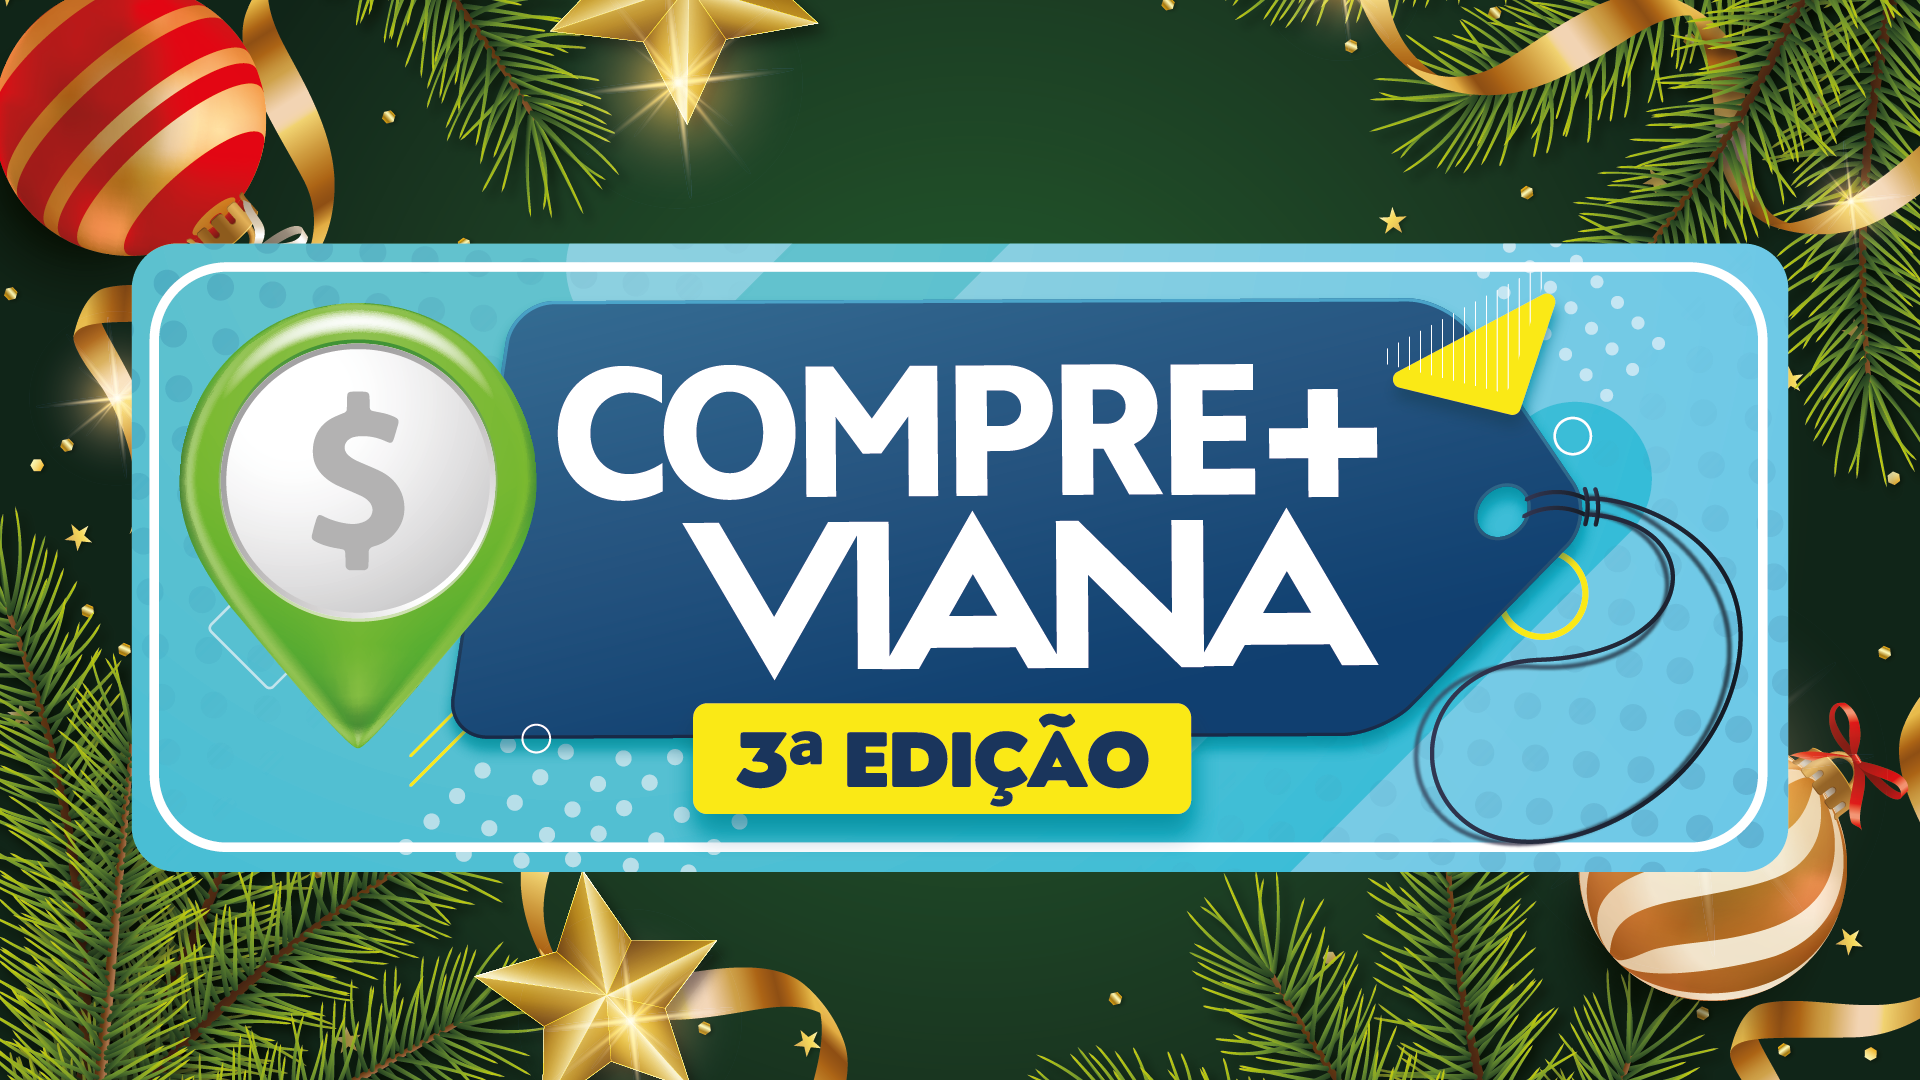 Compre+Viana: Cupons da campanha começam a ser entregues no comércio